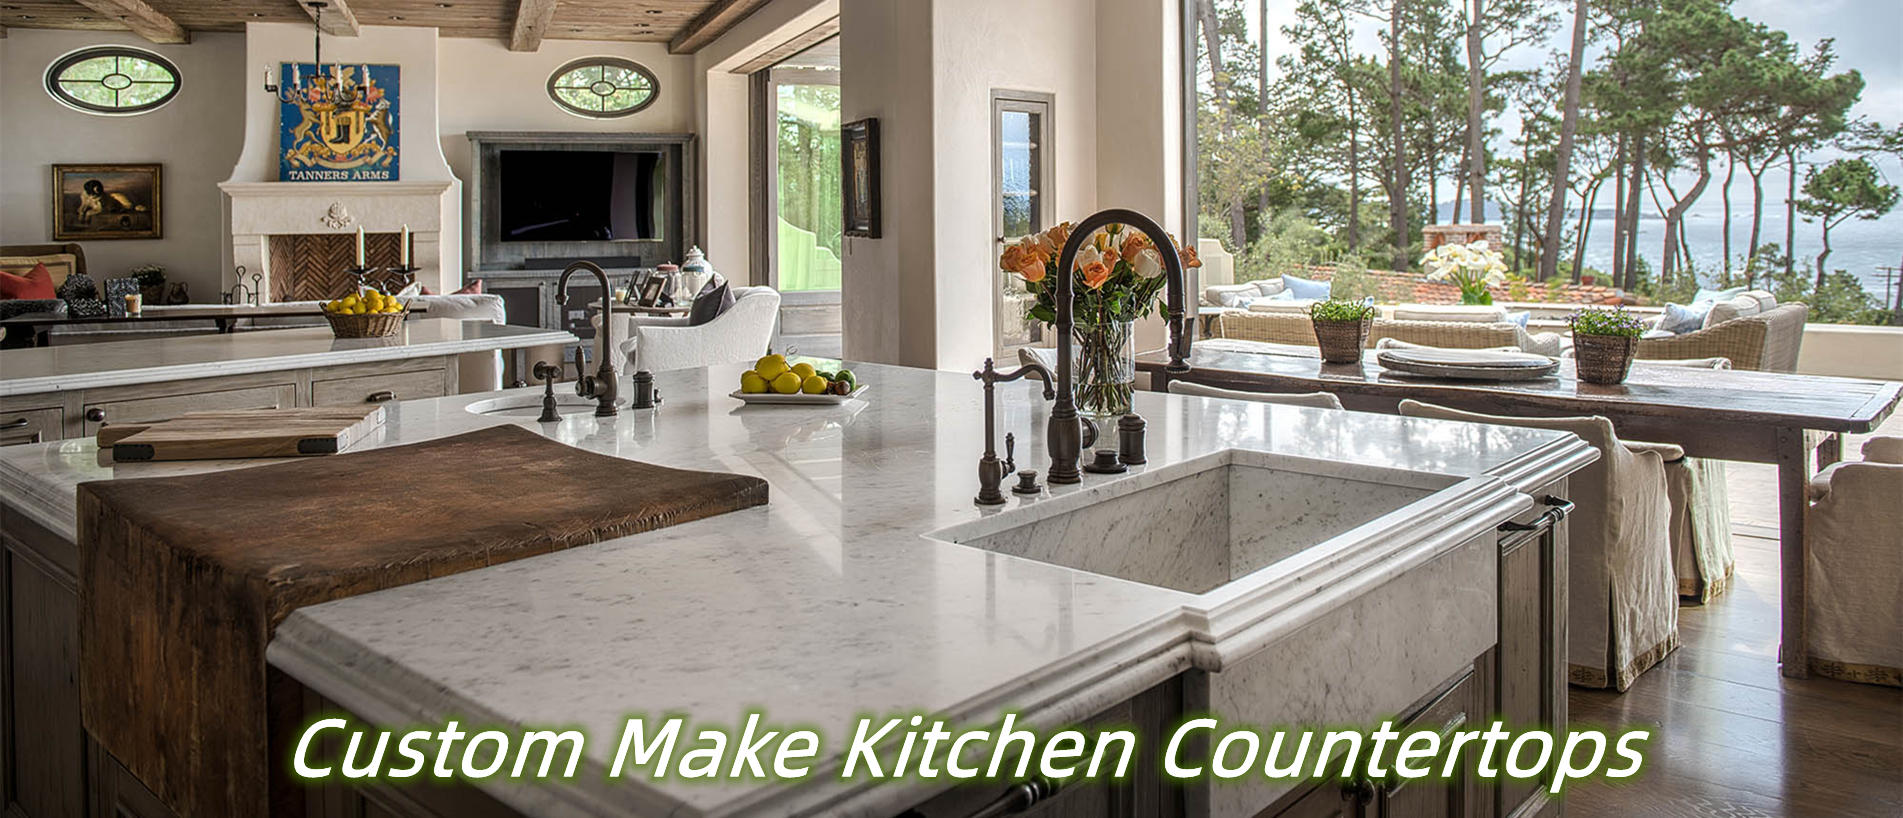 custom make kitchen countertops